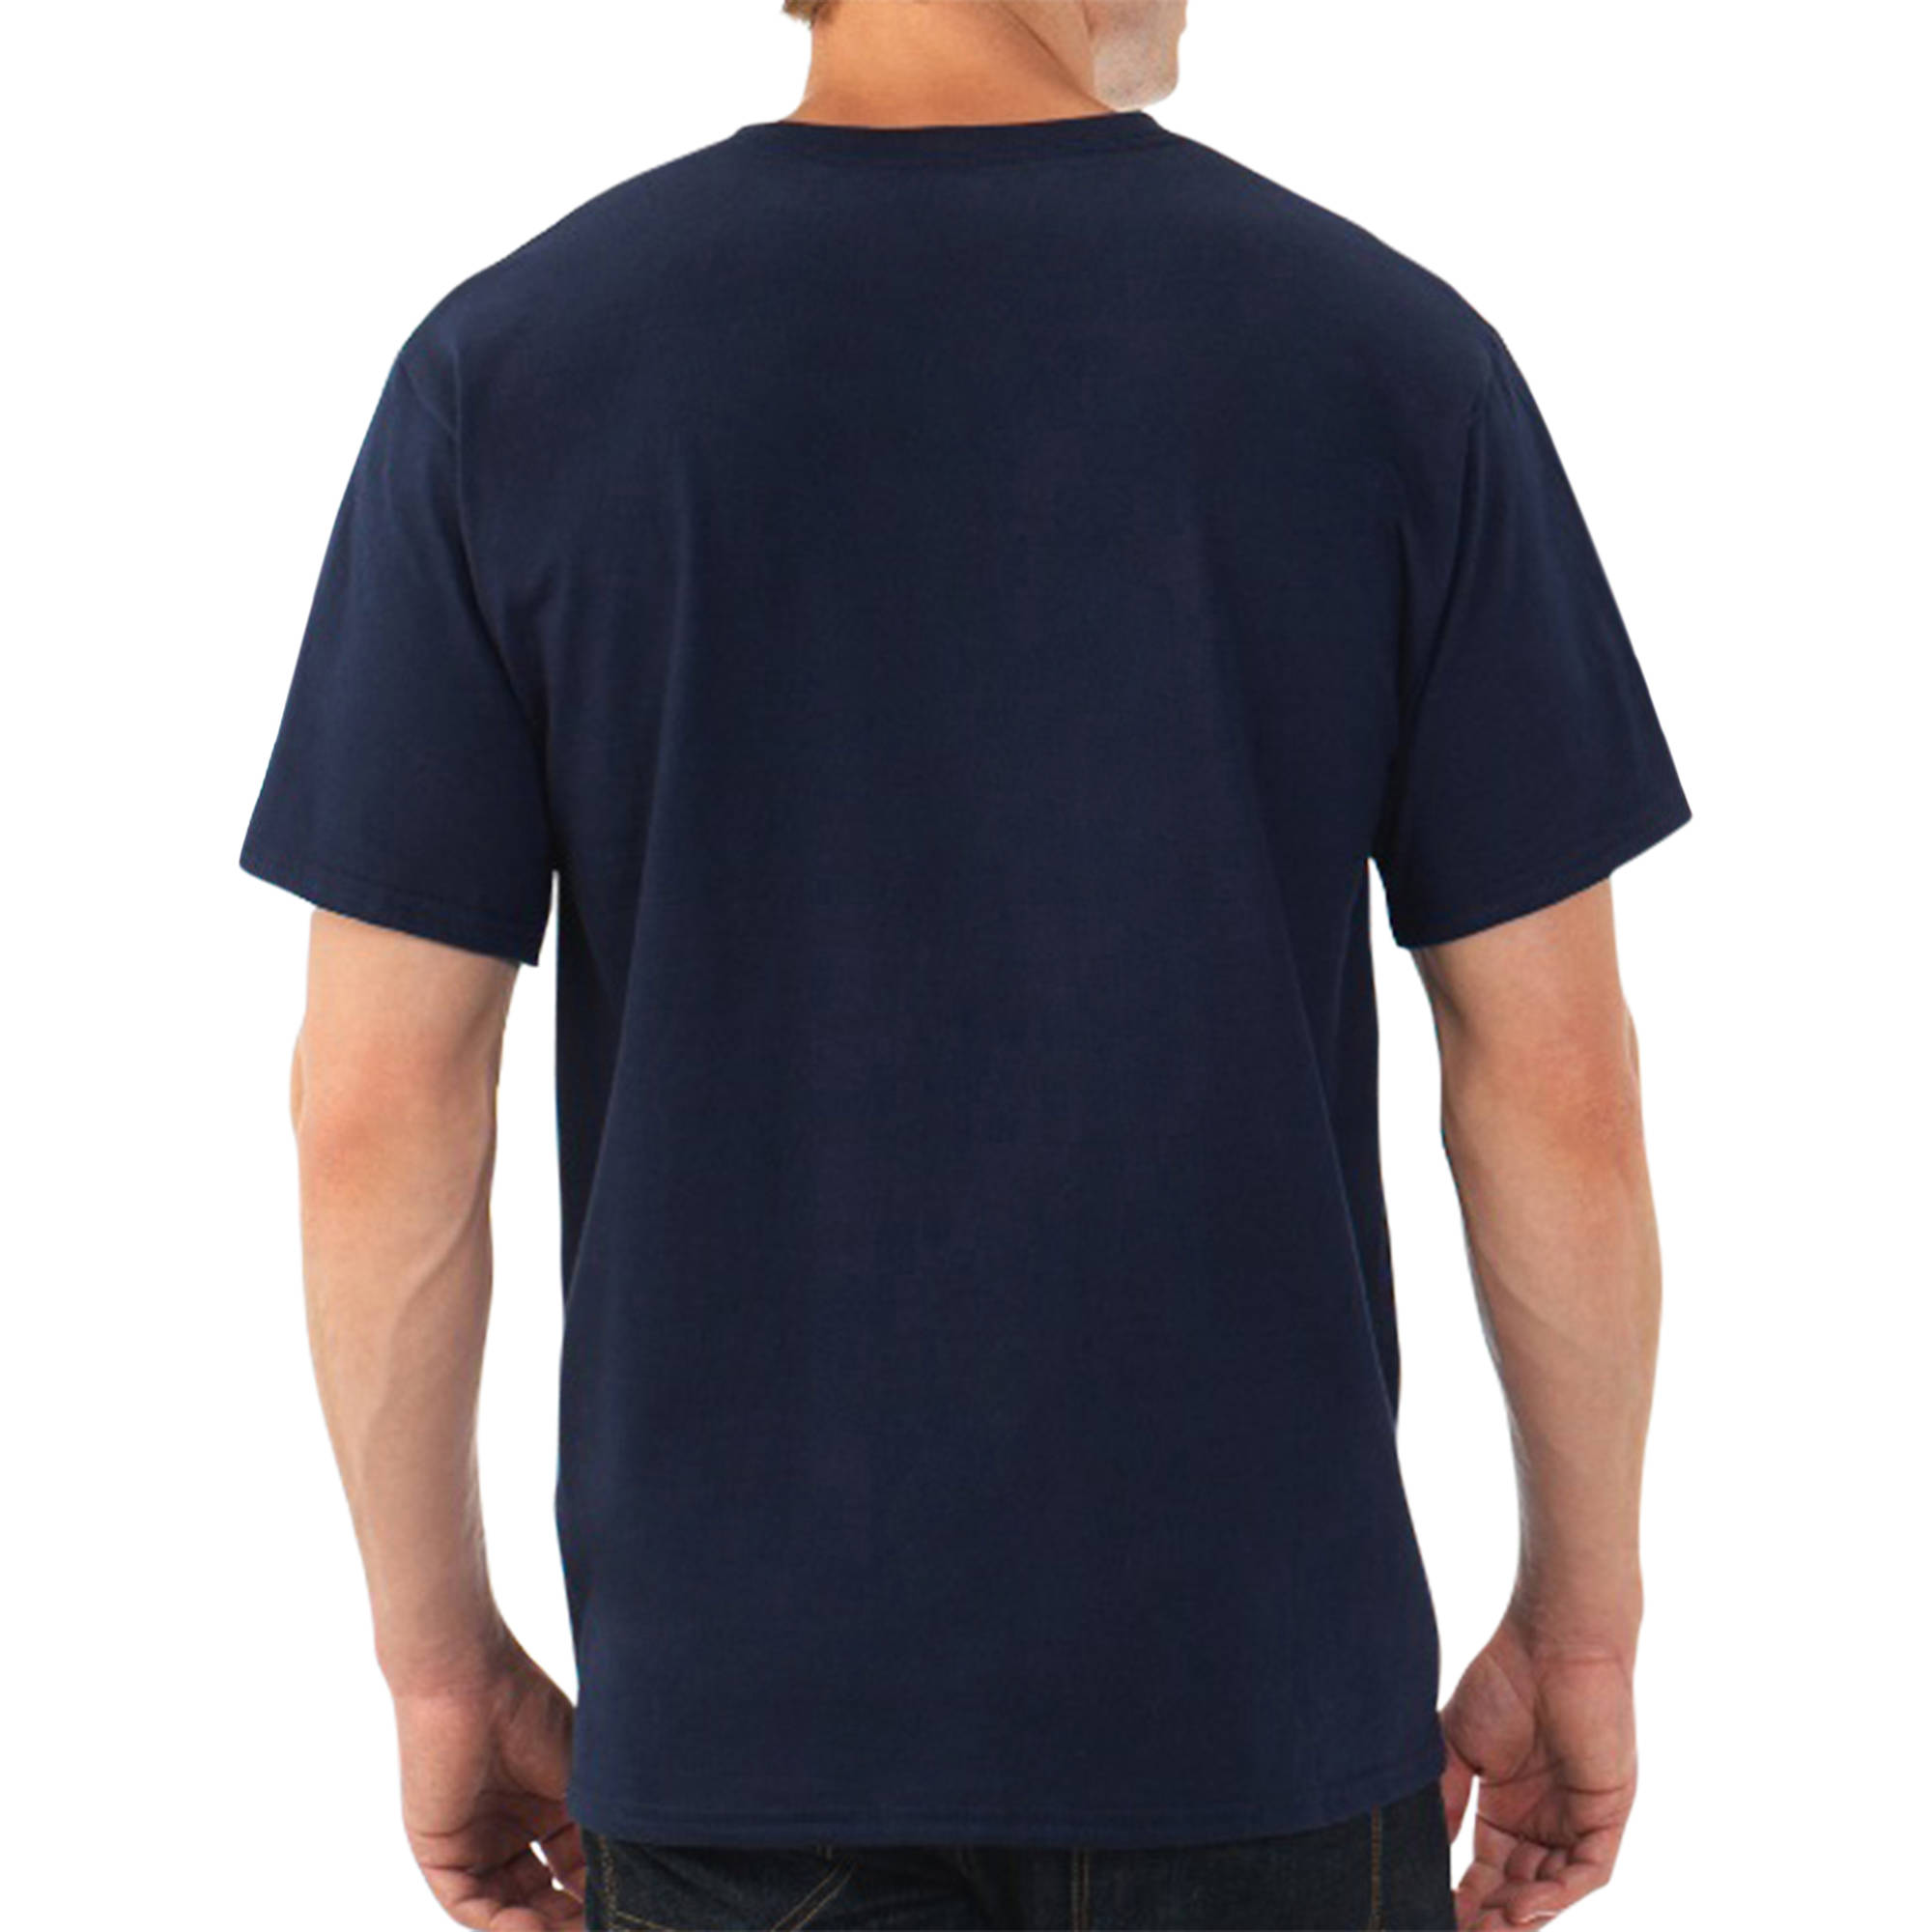 Platinum EverSoft Big Men's Short Sleeve V-Neck T Shirt - image 3 of 3